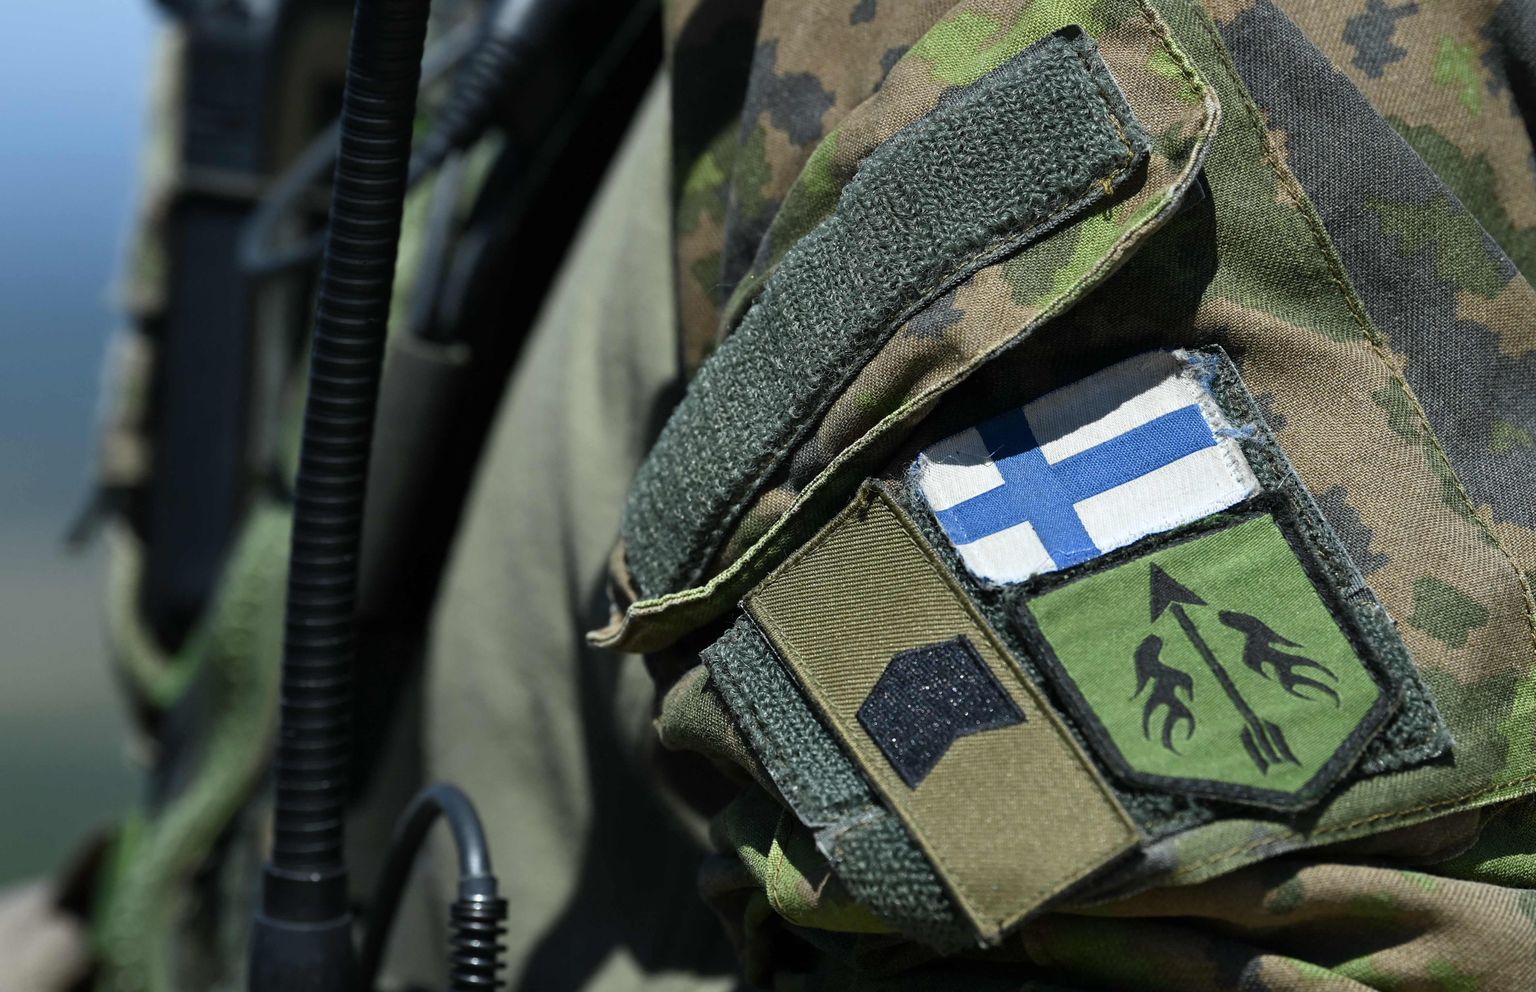 Soome sõjaväelane.